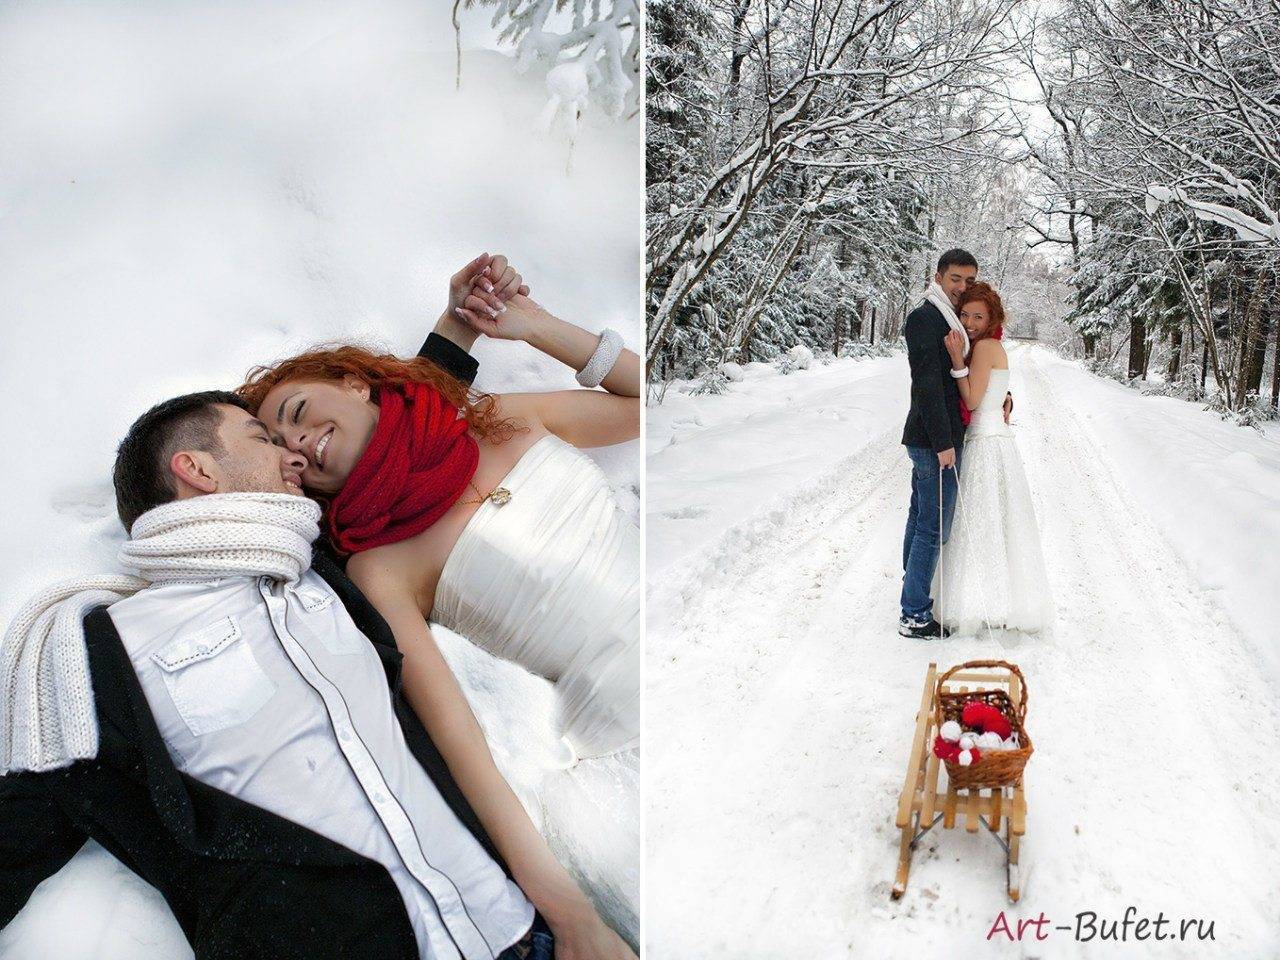 Интересные идеи для фотосессии свадьбы зимой – места, реквизит, позы